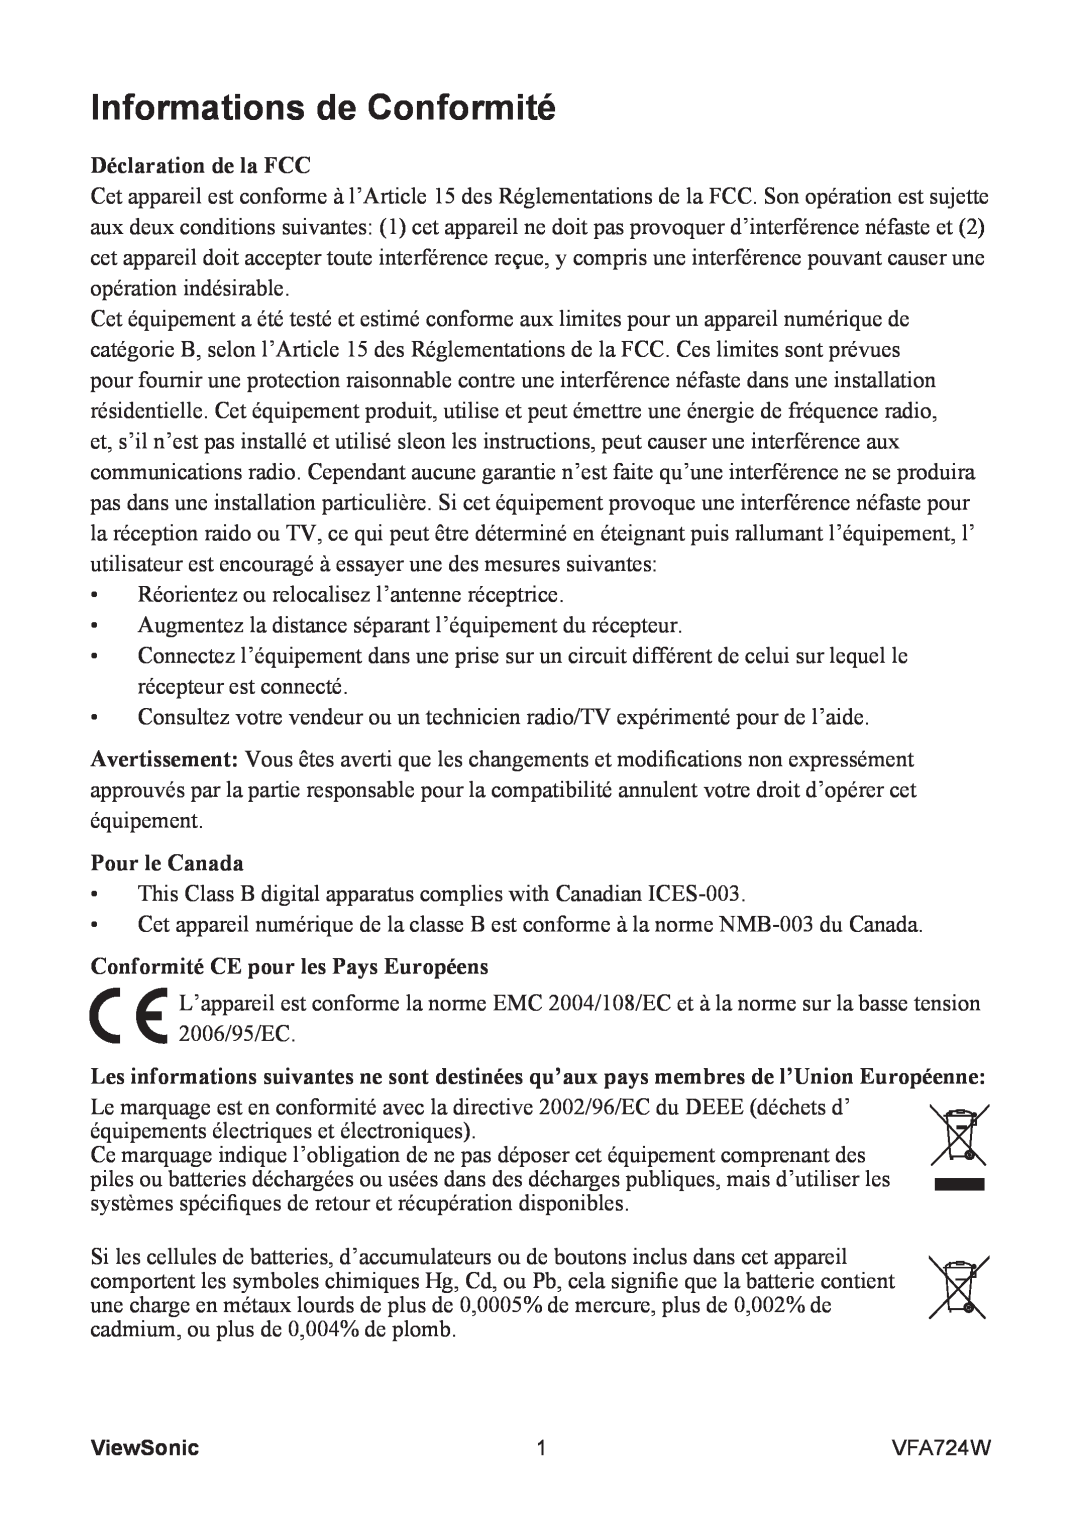 ViewSonic VFA724W Informations de Conformité, Déclaration de la FCC, Pour le Canada, Conformité CE pour les Pays Européens 